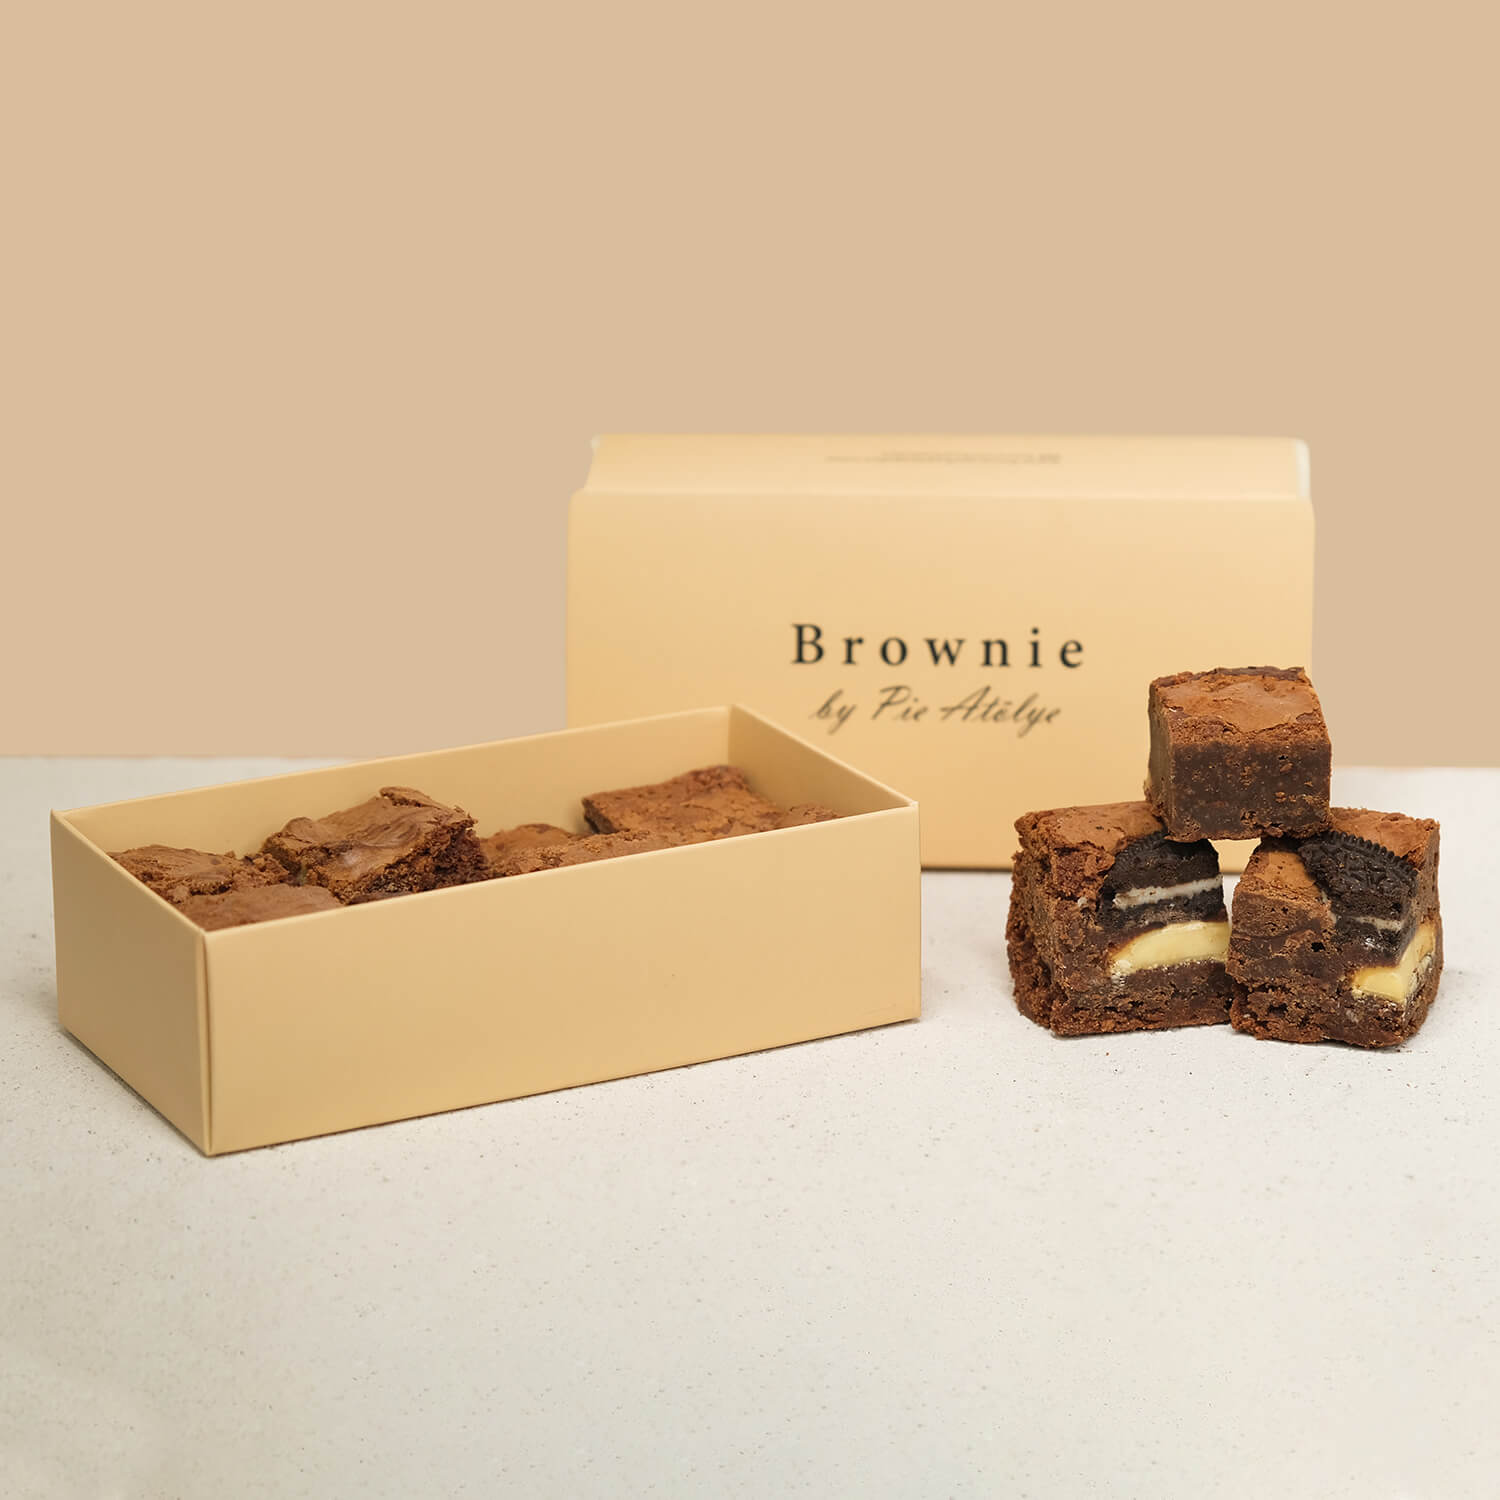 Brownie By Pie Atölye 8'li Mix Box